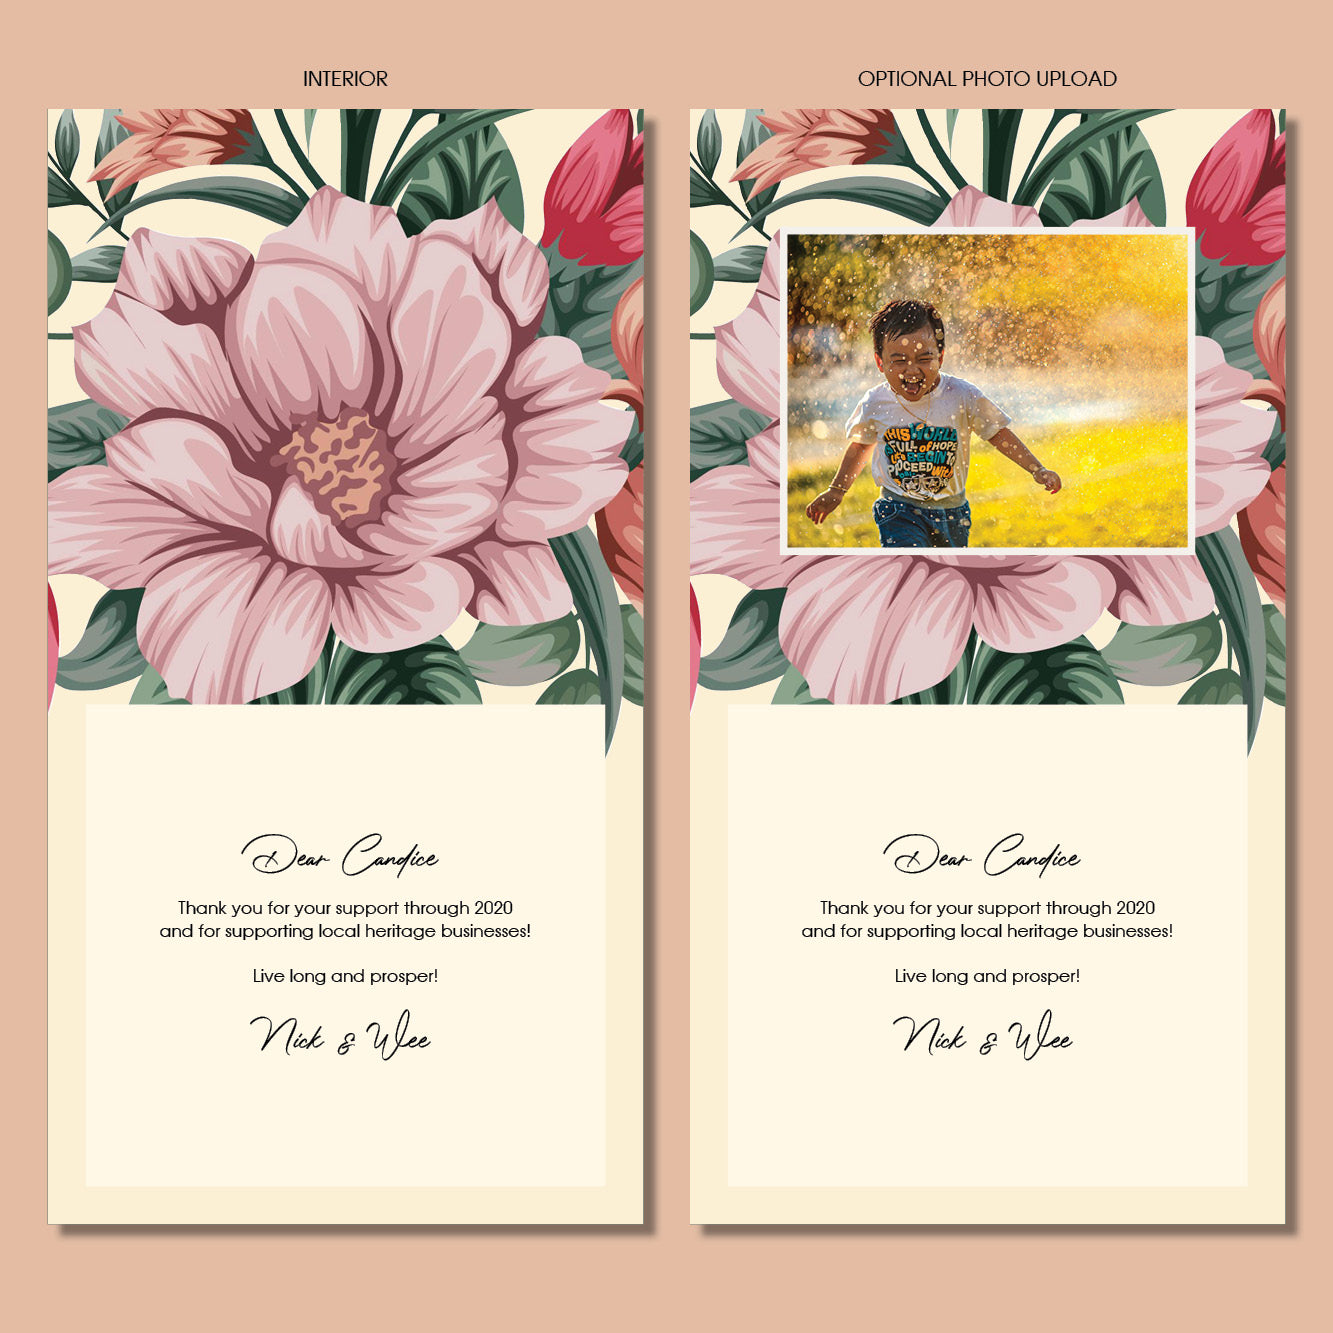 Sympathy Card - Memories Bouquet